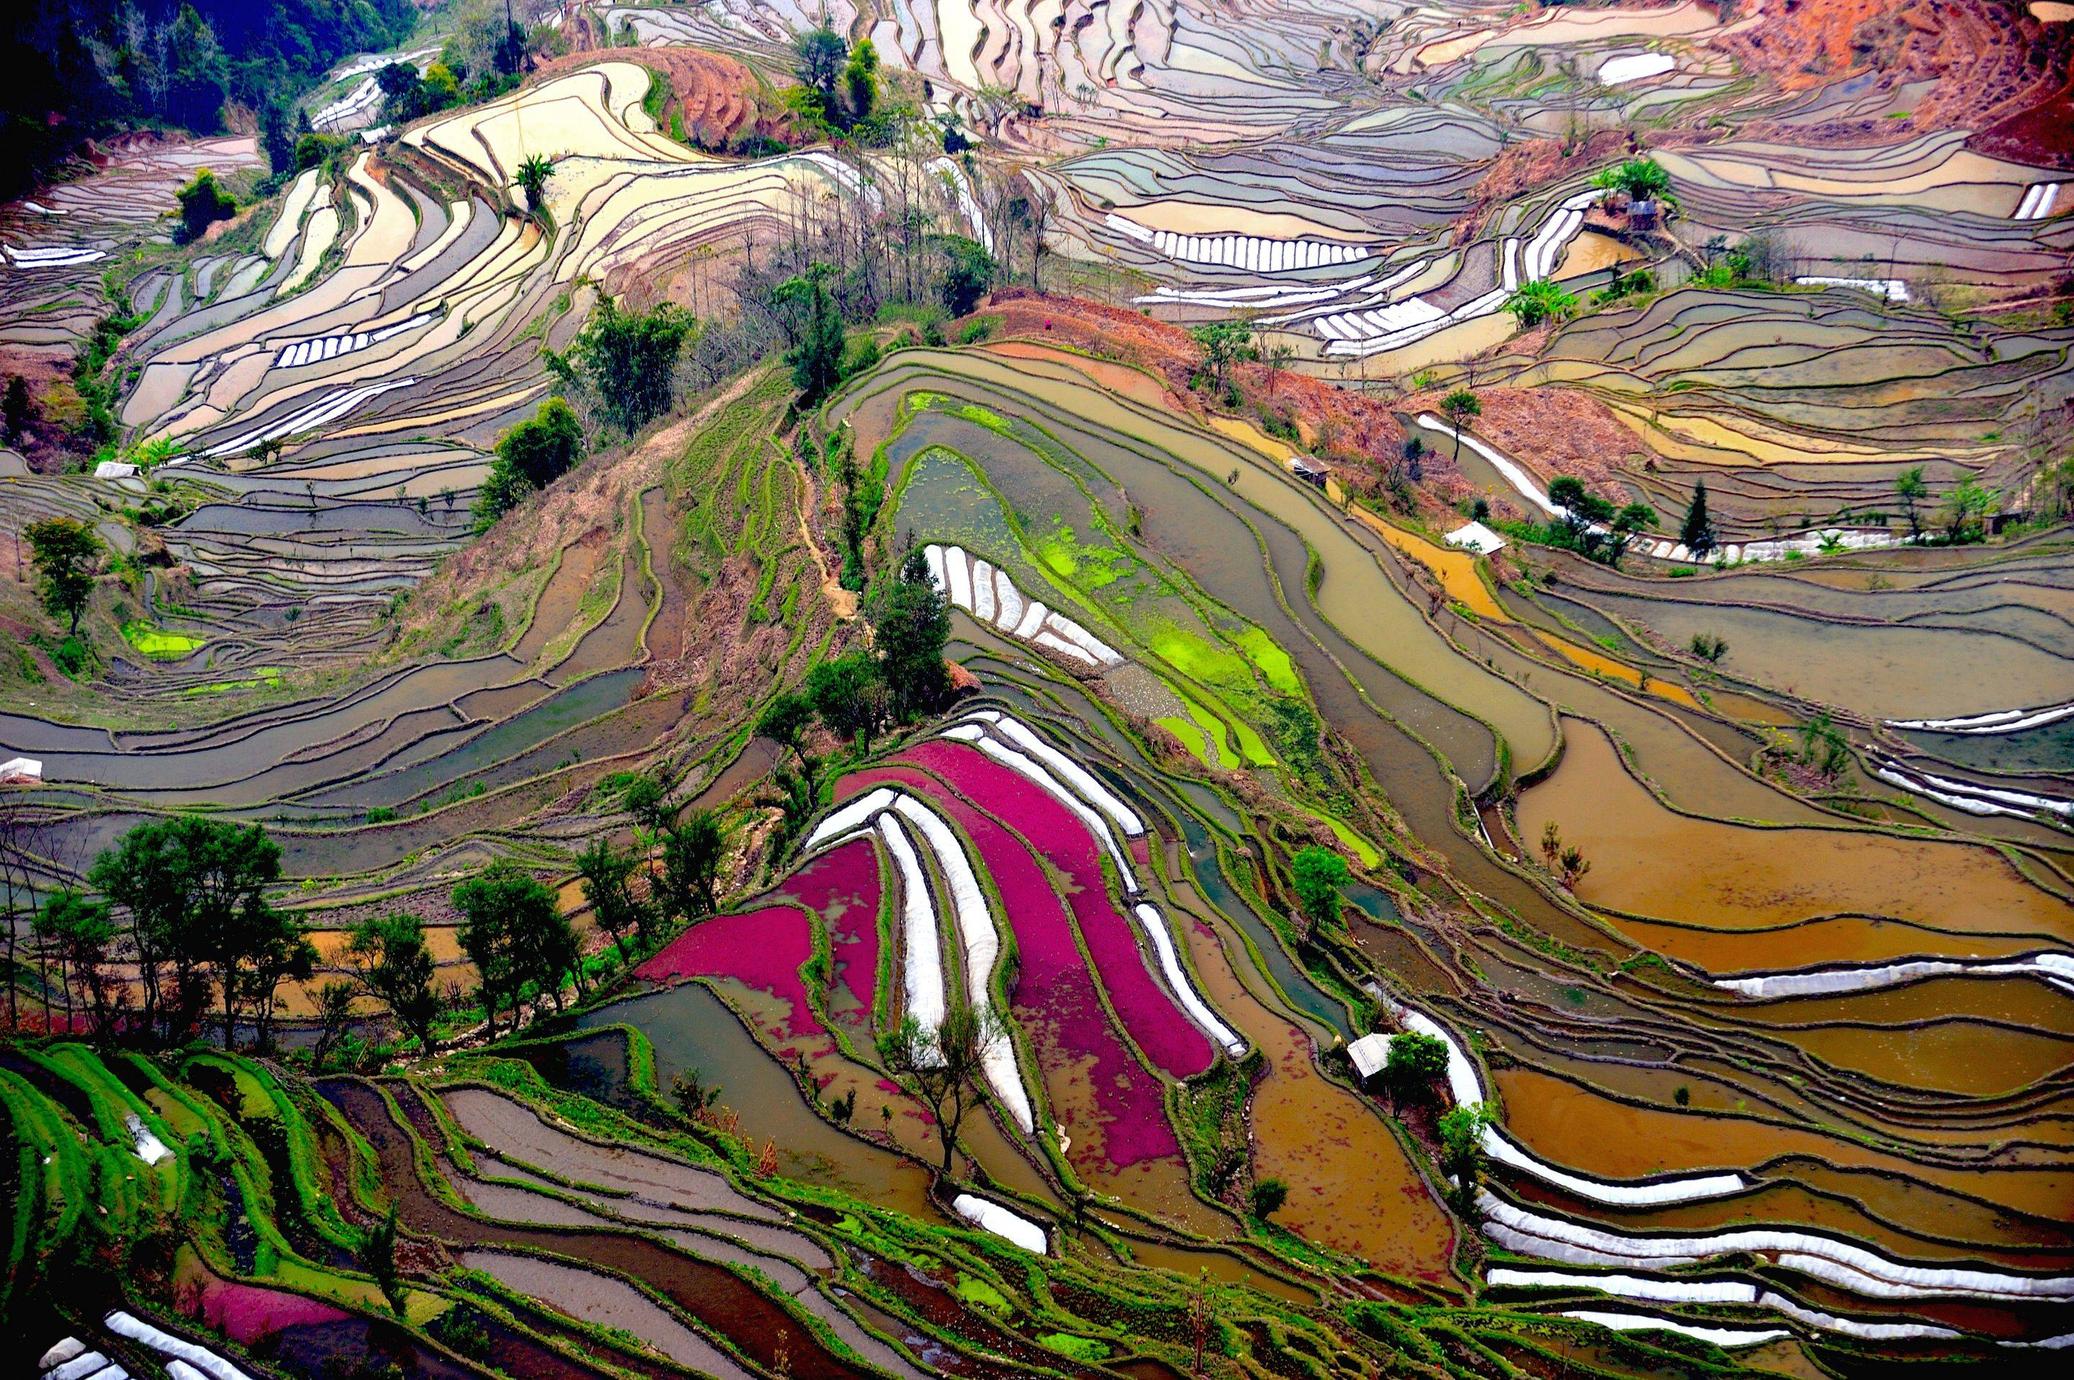 Les rizières de Longji